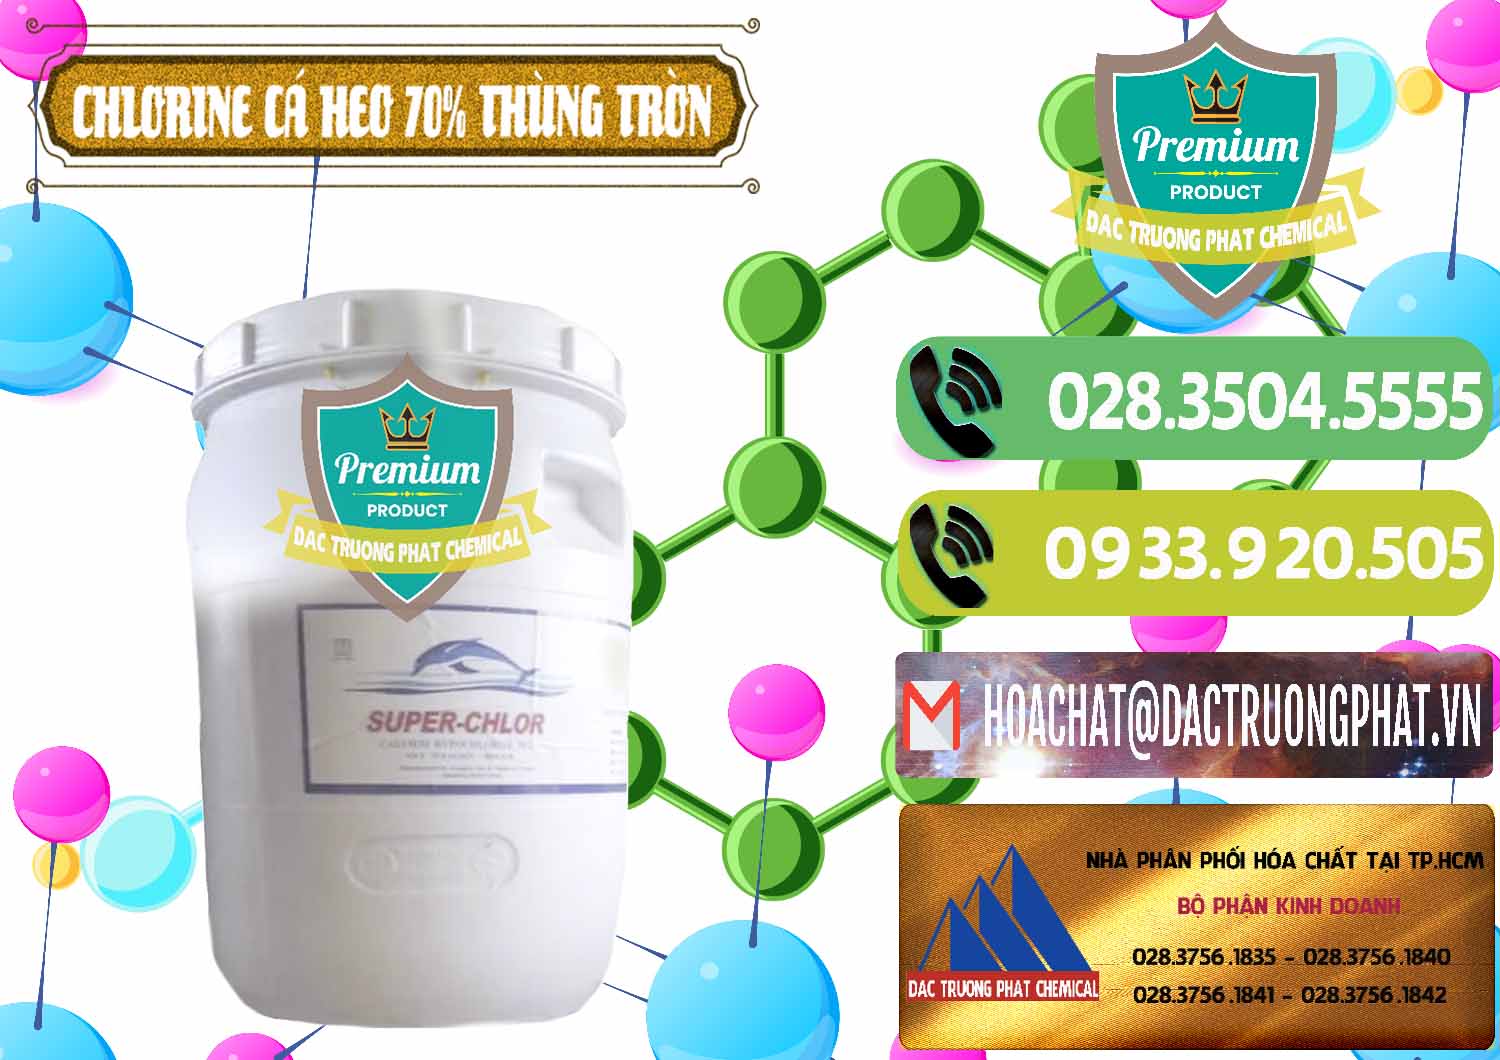 Cty kinh doanh ( bán ) Clorin - Chlorine Cá Heo 70% Super Chlor Thùng Tròn Nắp Trắng Trung Quốc China - 0239 - Công ty chuyên kinh doanh ( cung cấp ) hóa chất tại TP.HCM - hoachatmientay.vn